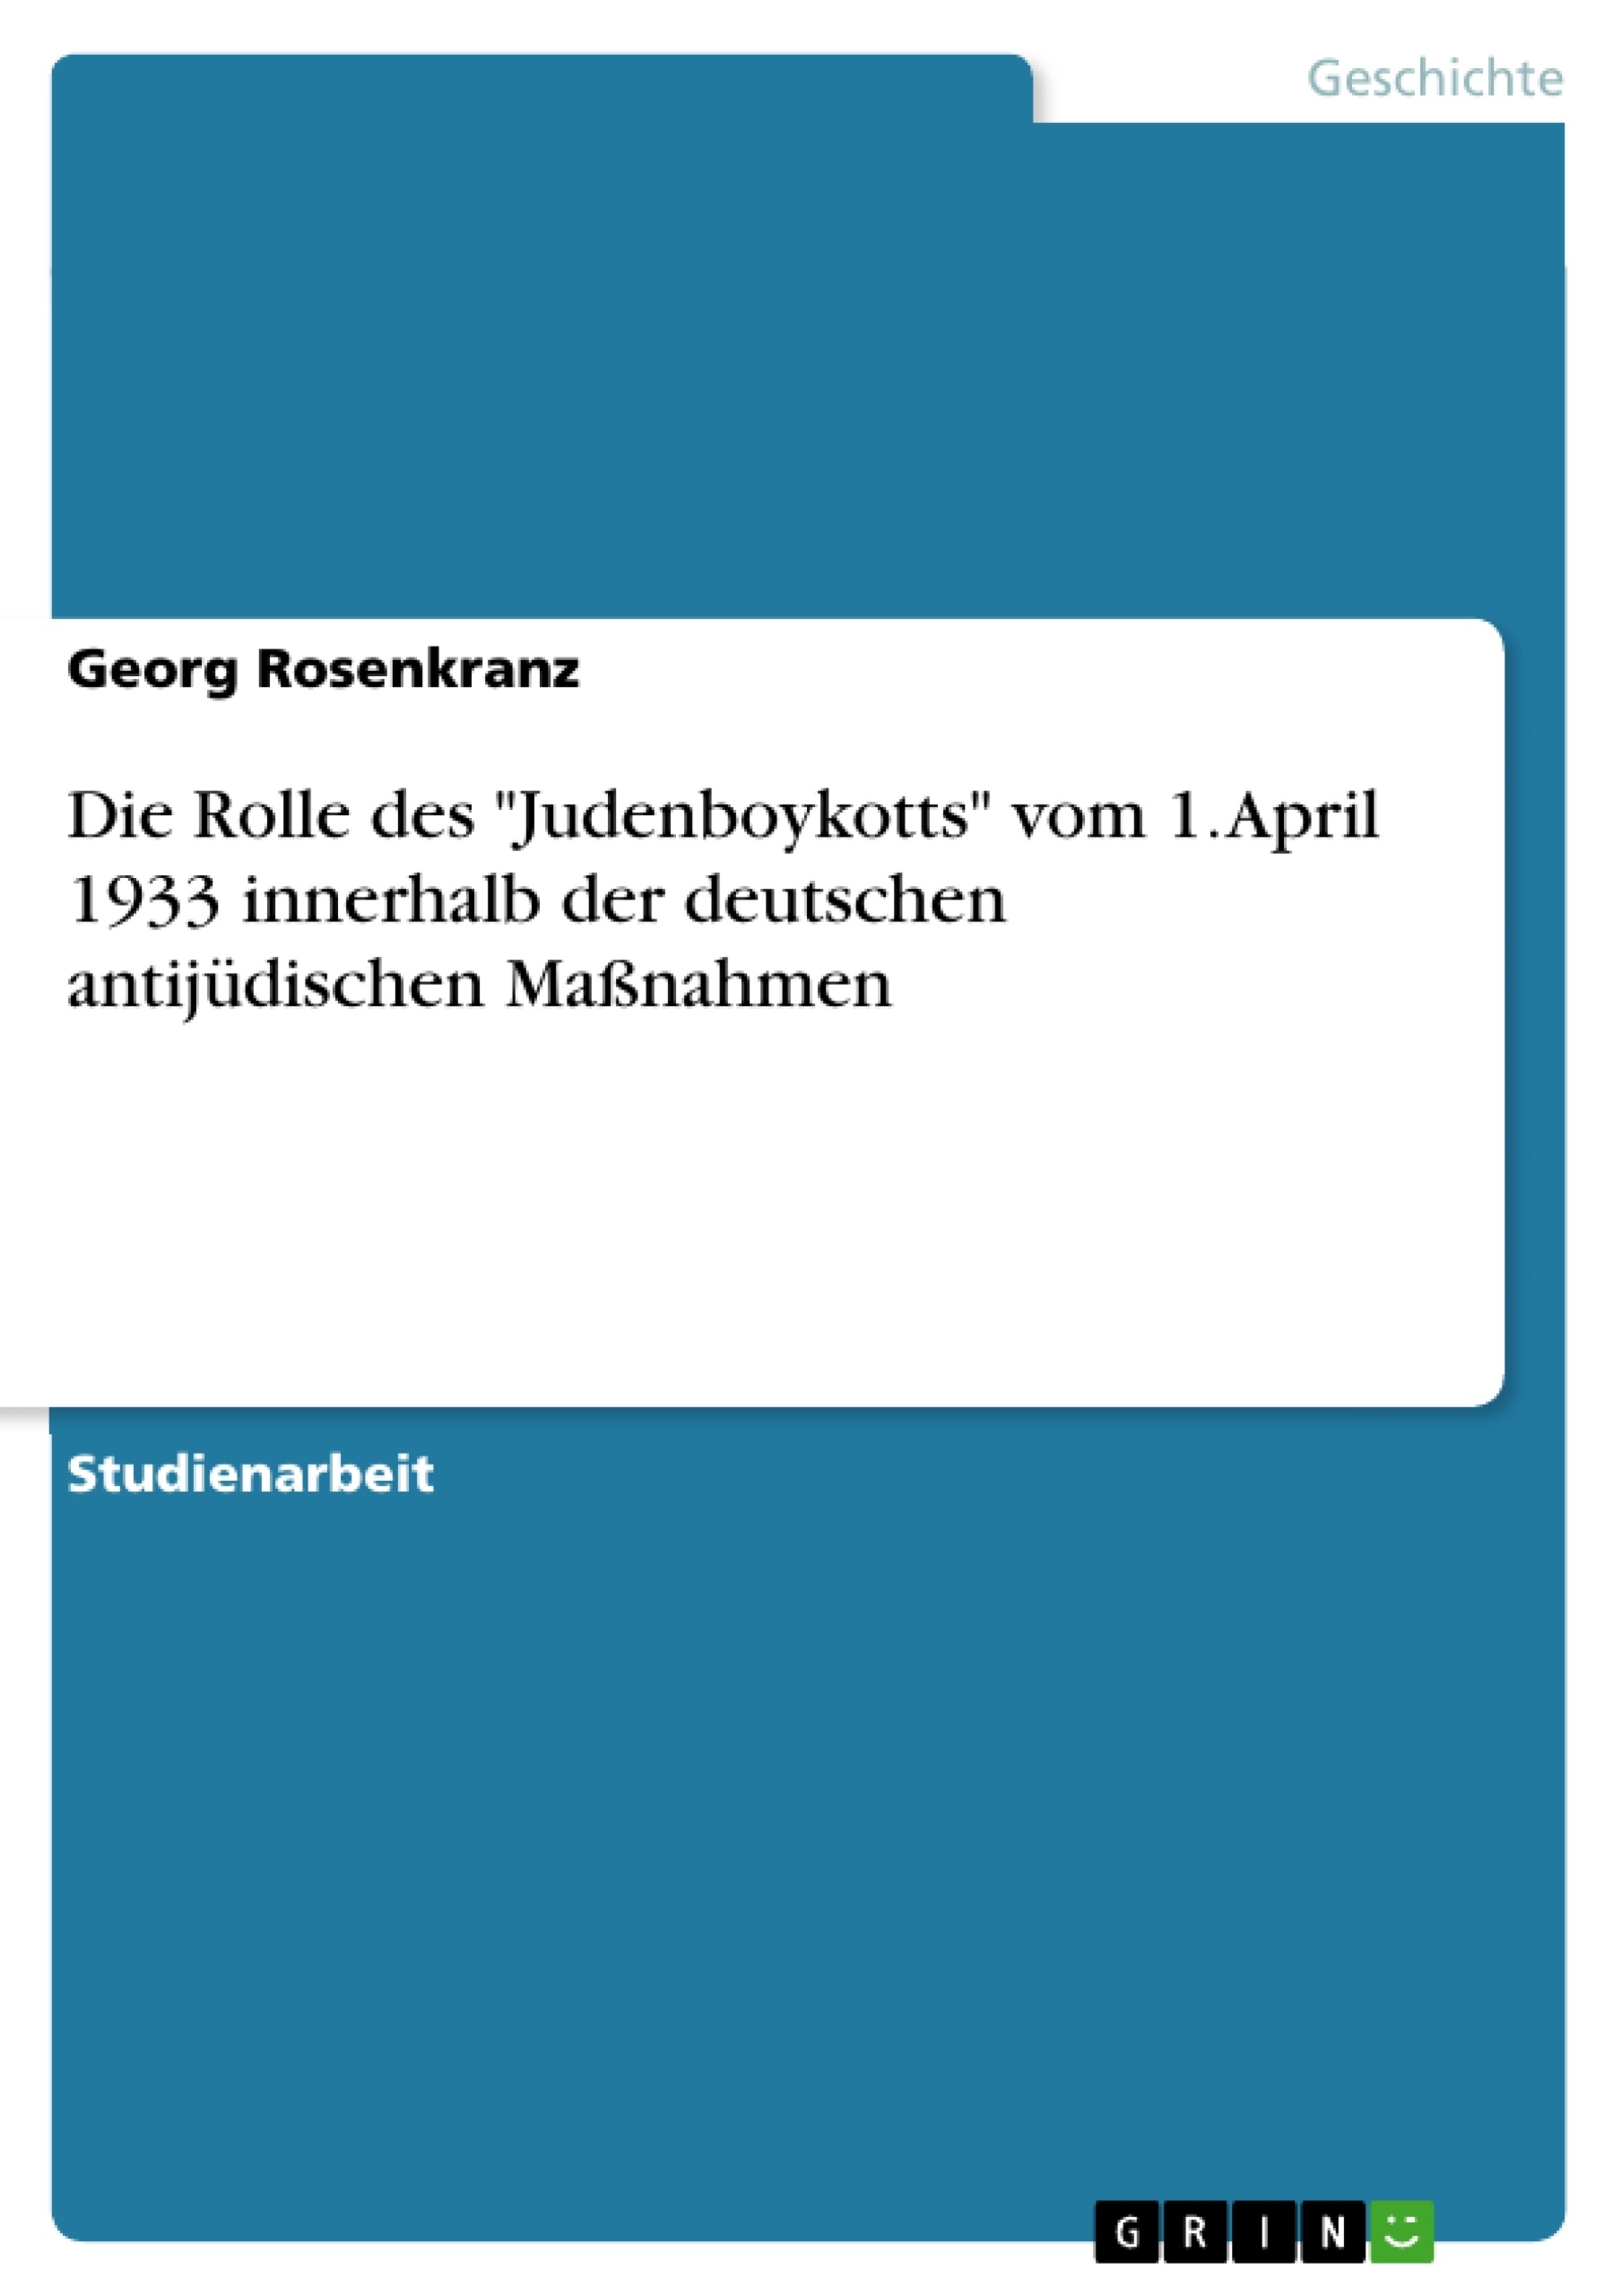 Título: Die Rolle des "Judenboykotts" vom 1. April 1933 innerhalb der deutschen antijüdischen Maßnahmen